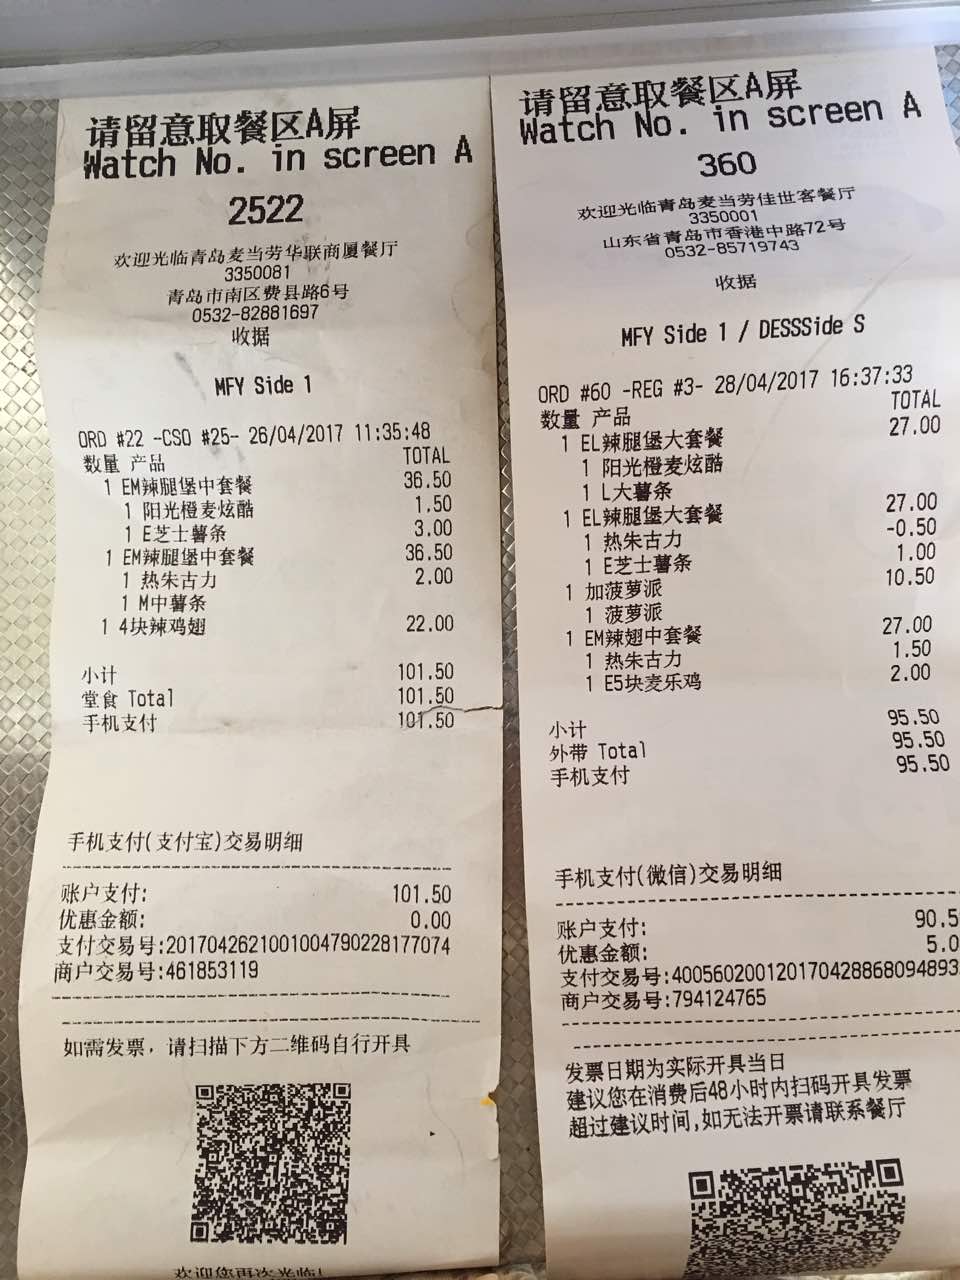 而麦当劳(华联商厦餐厅)买的少反而价格越高,真的不明白了,当时的小票